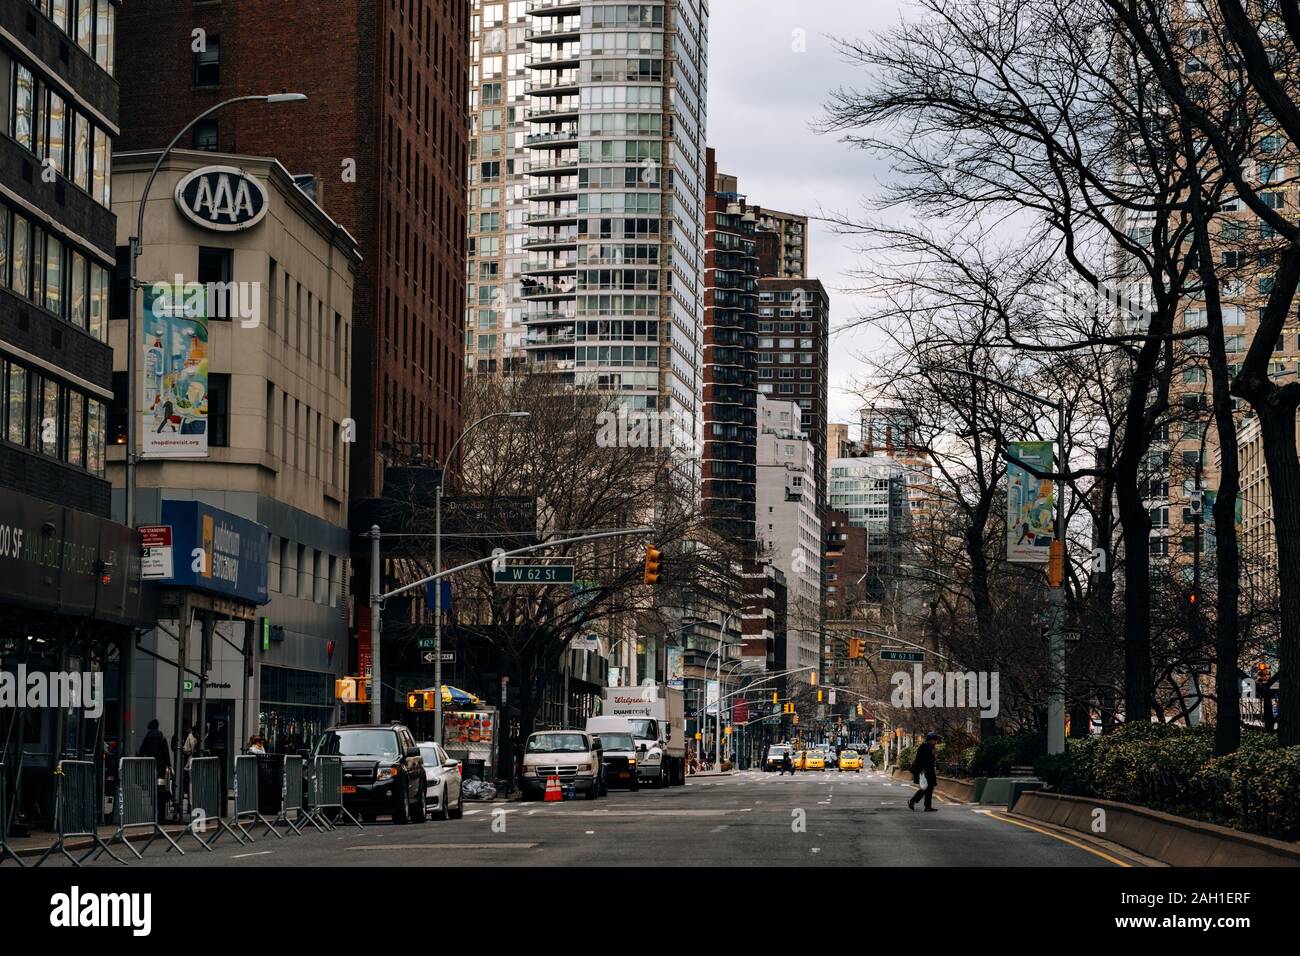 La Ciudad de Nueva York - USA - 18 Mar 2019: vista de la calle de rascacielos y antiguos edificios alrededor de Broadway Upper West Side Foto de stock